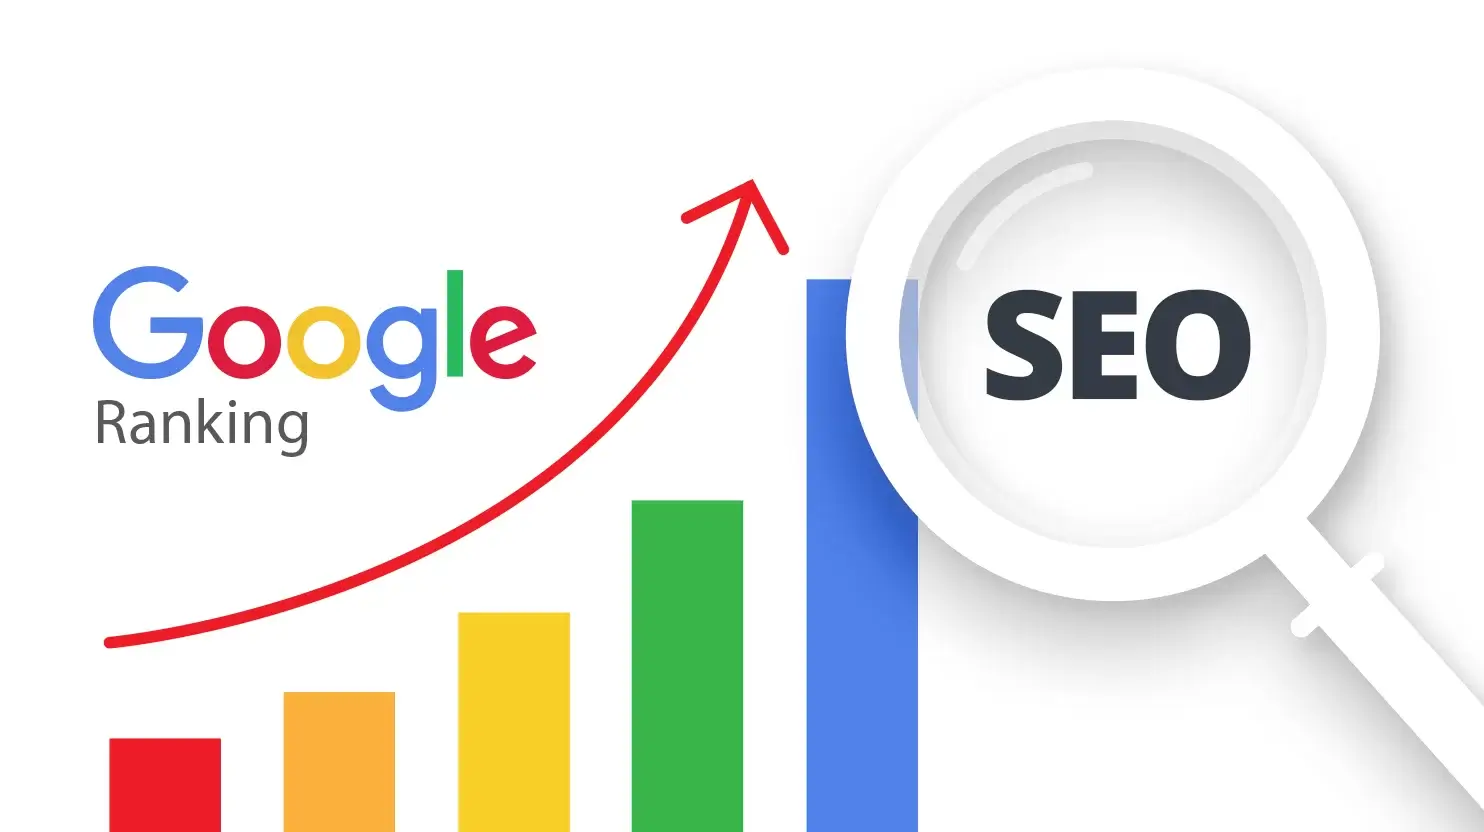 구글 seo 최적화-방법-구글 검색엔진 최적화 가이드